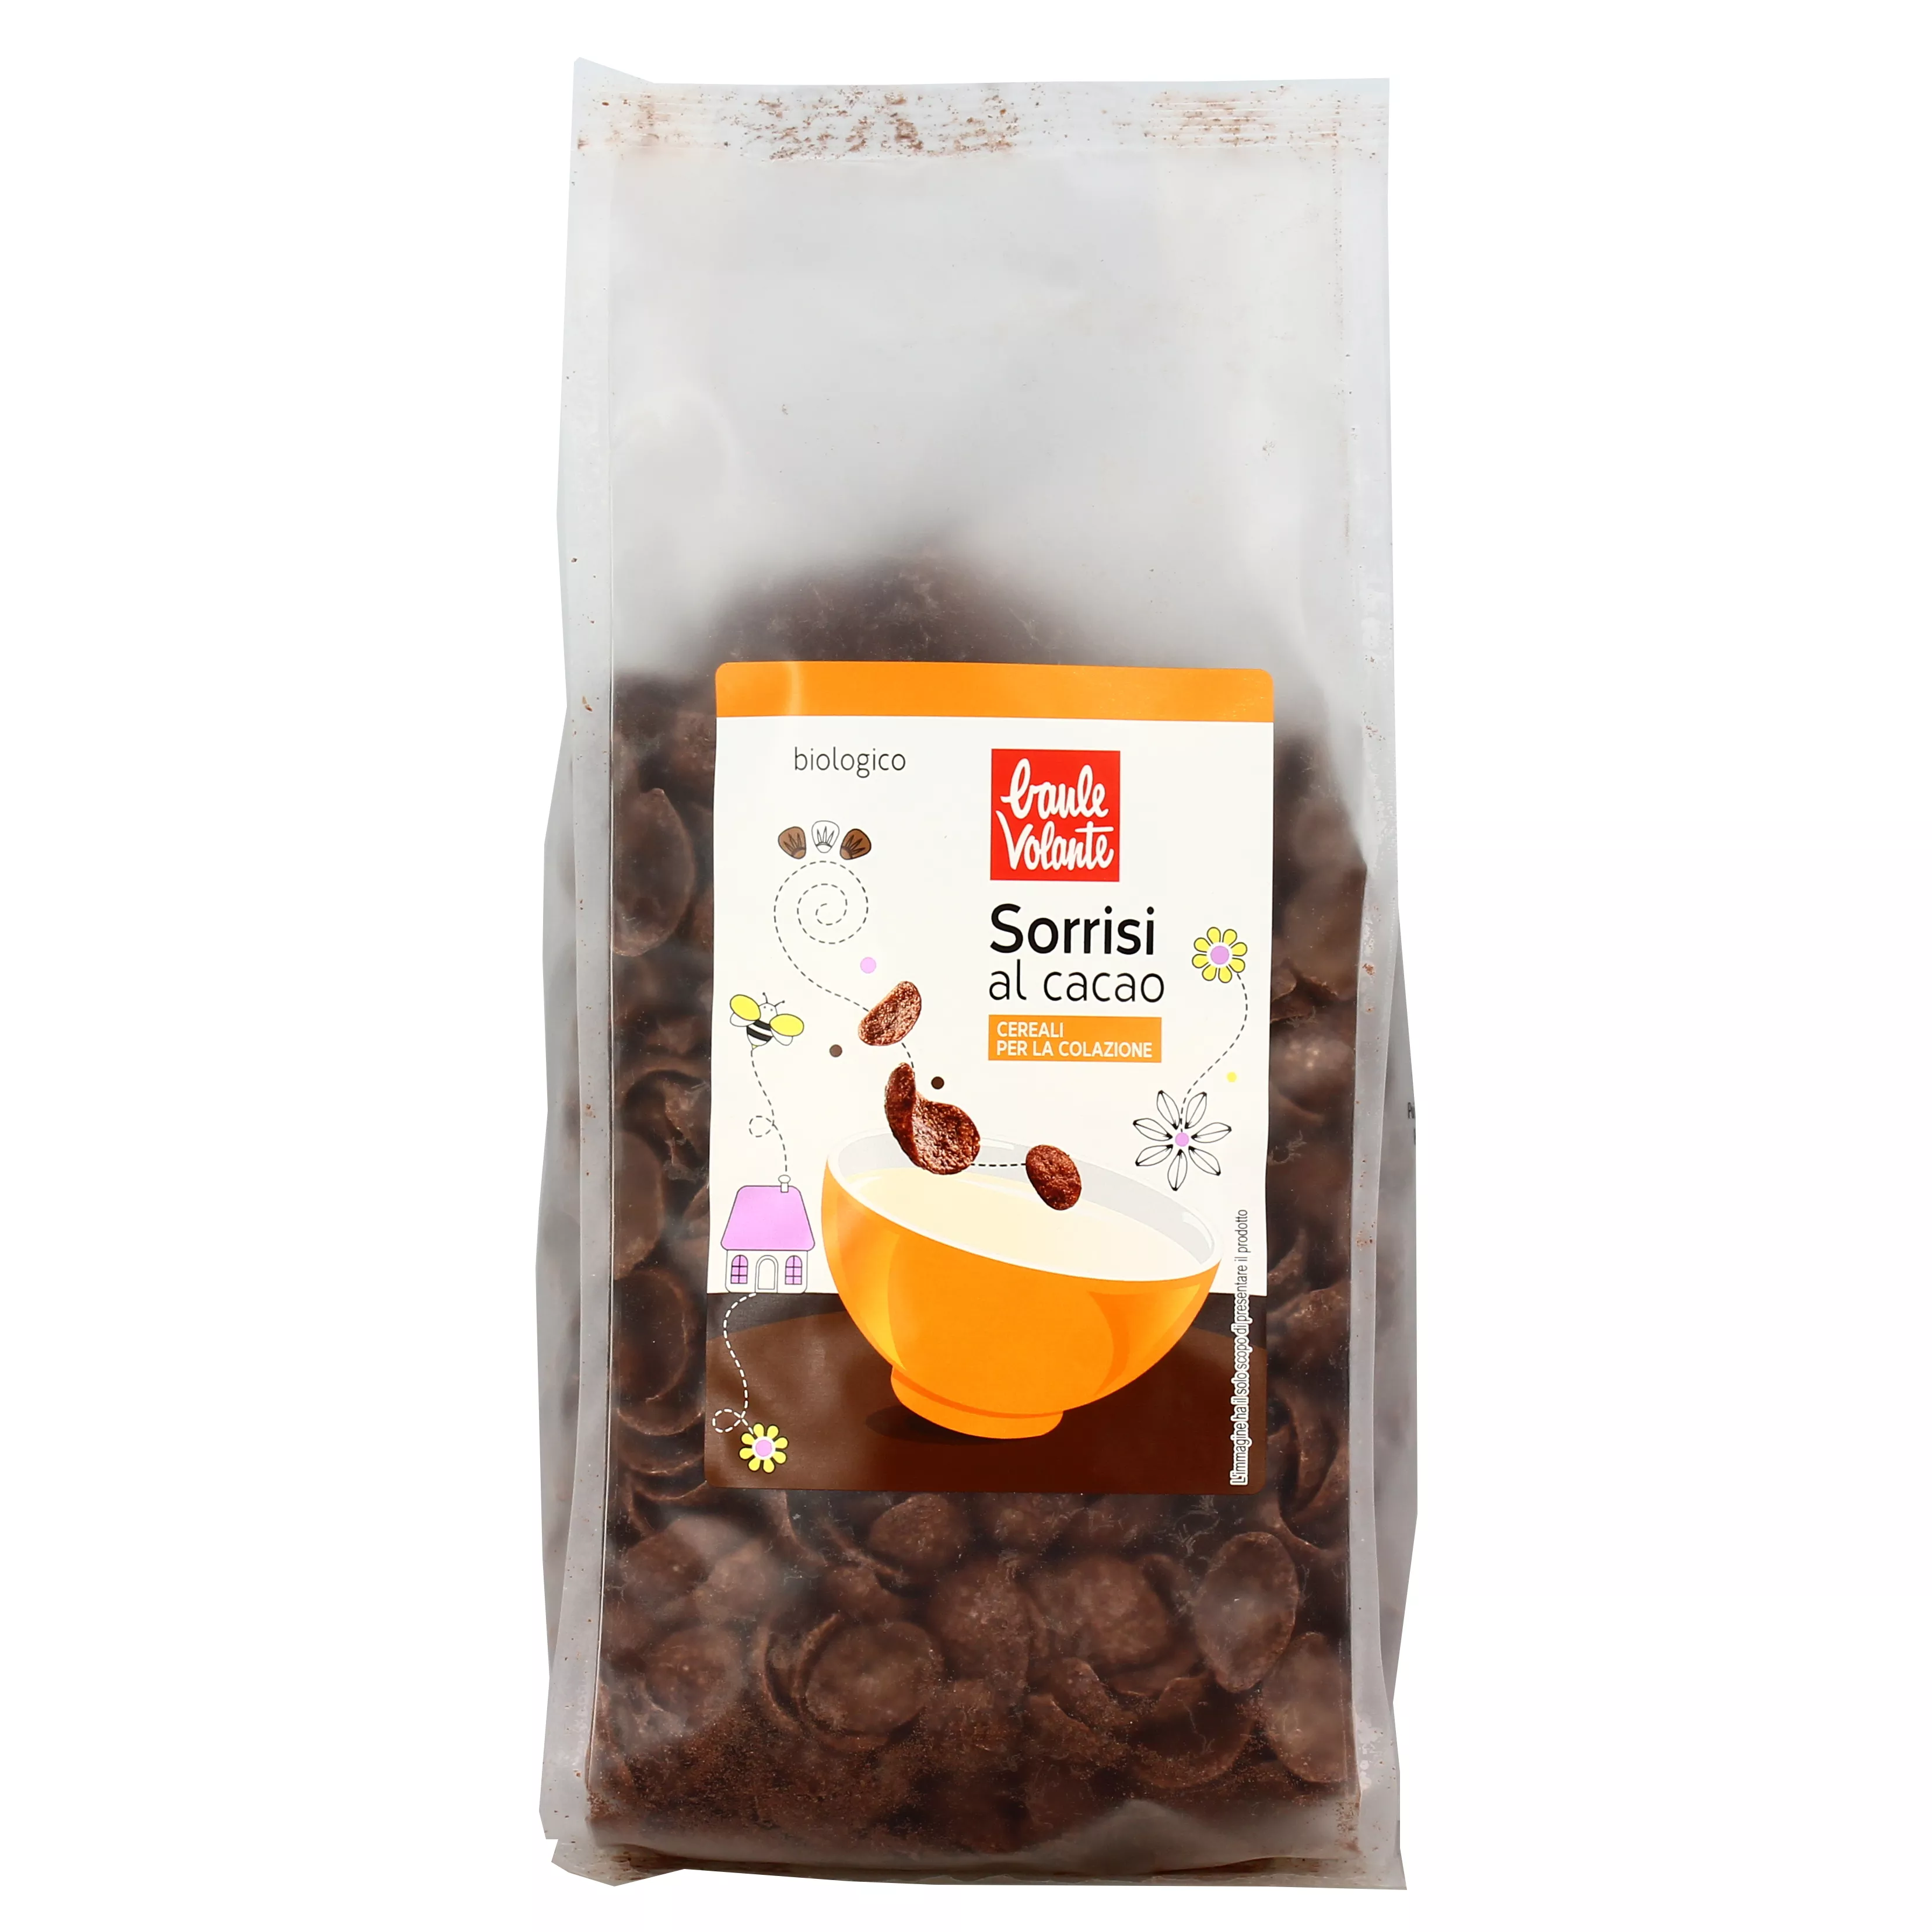 Cereali per la Colazione Bio Sorrisi al Cacao - Baule Volante